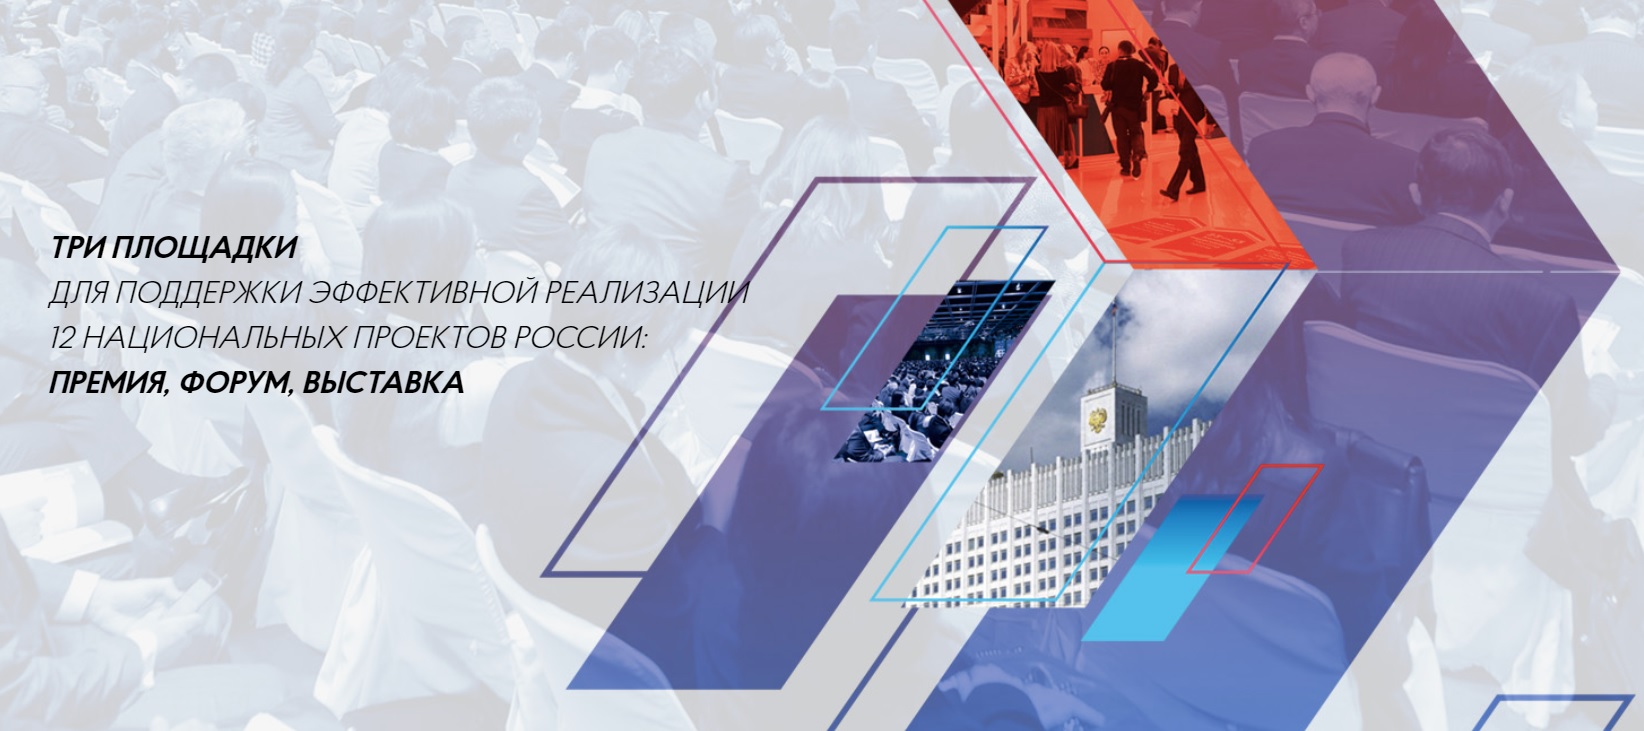 Интернет-сервис STQR.ru примет участие в конкурсе Проектный лидер в номинации Лидер малого бизнеса